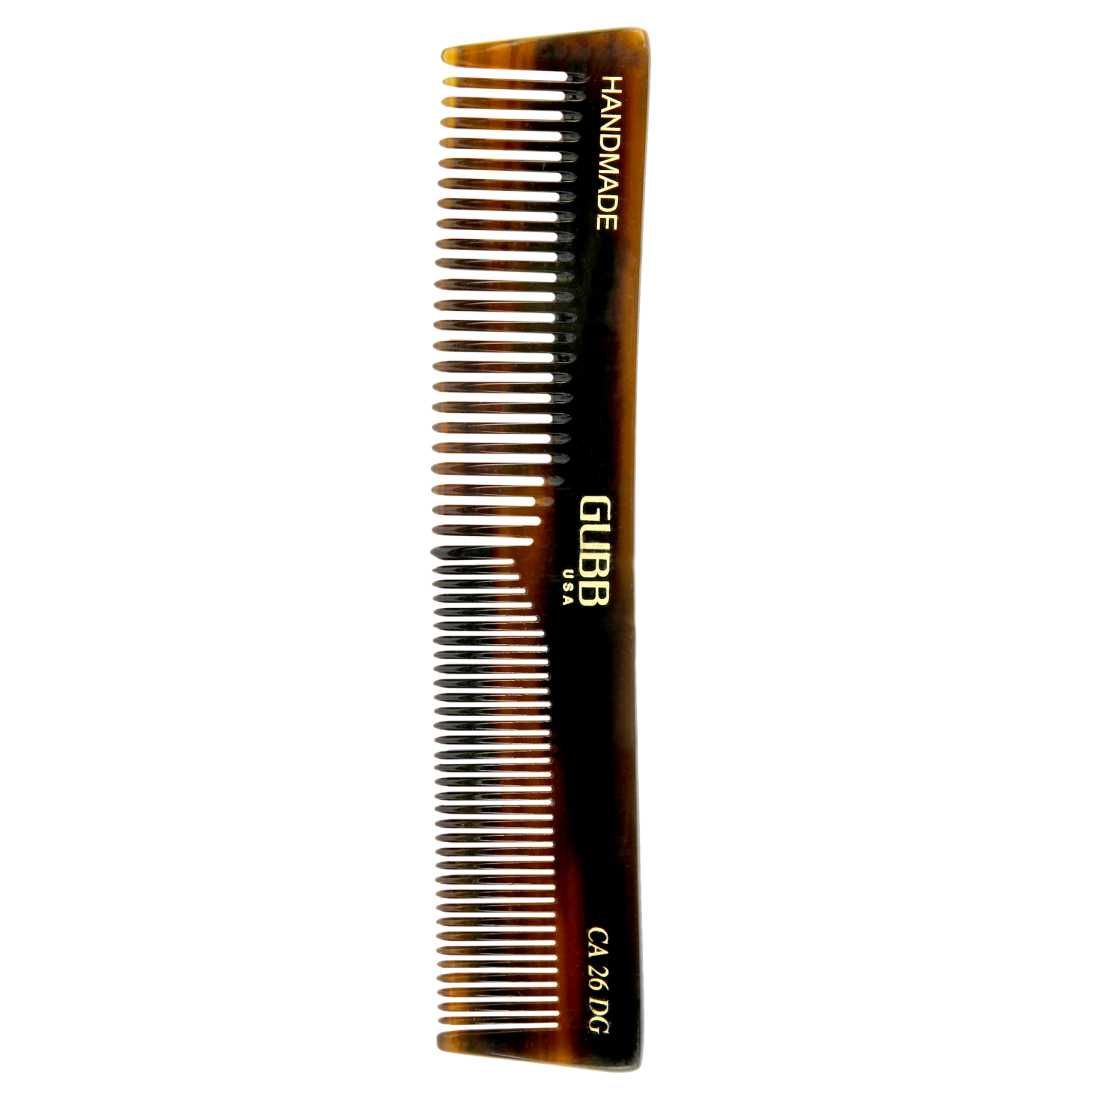 8 Pieces Hair Styling Comb Hair Brush Set Nylon India  Ubuy